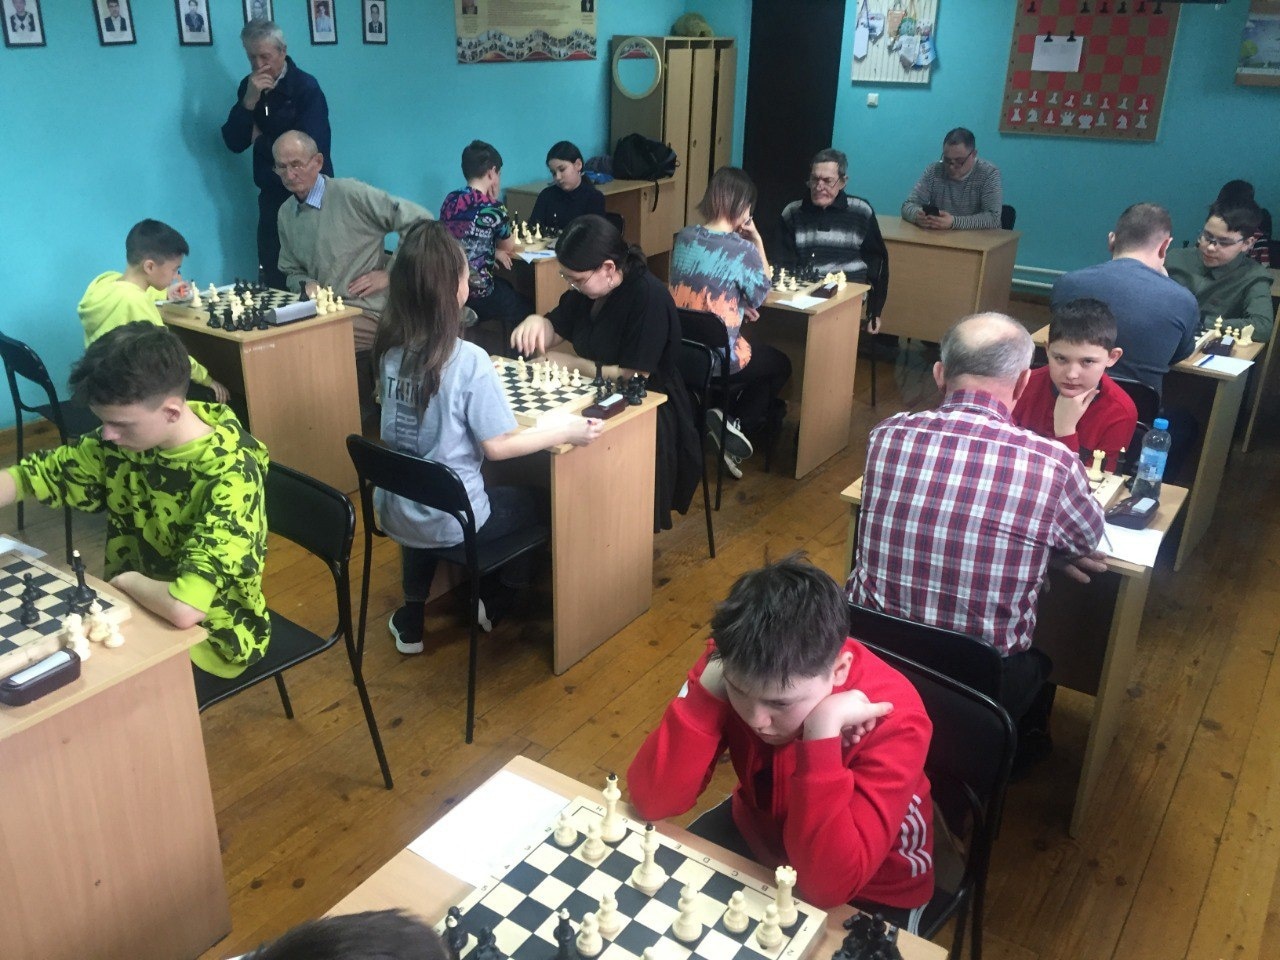 Завершился открытый чемпионат района по шахматам